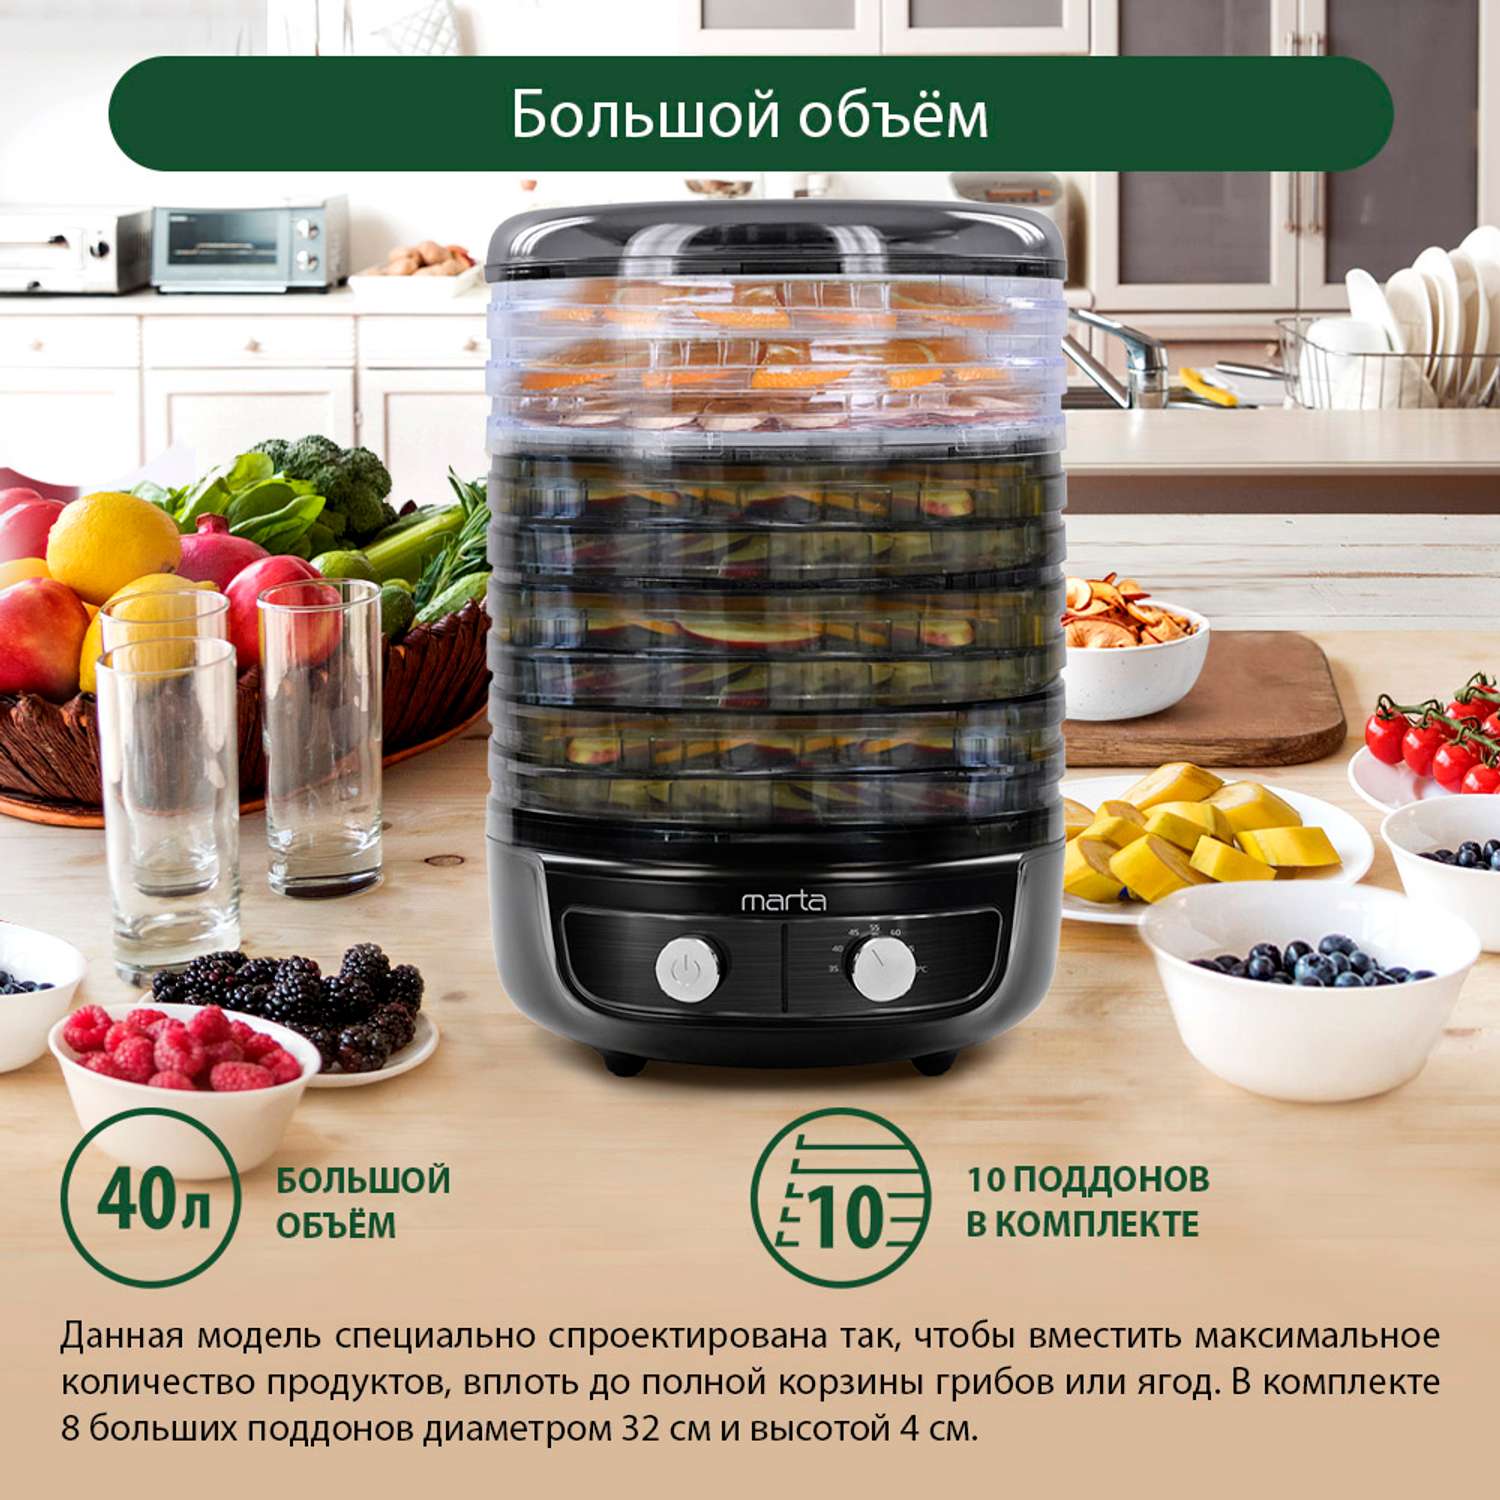 Сушилка для фруктов и овощей MARTA MFD-8010PS черный жемчуг - фото 2